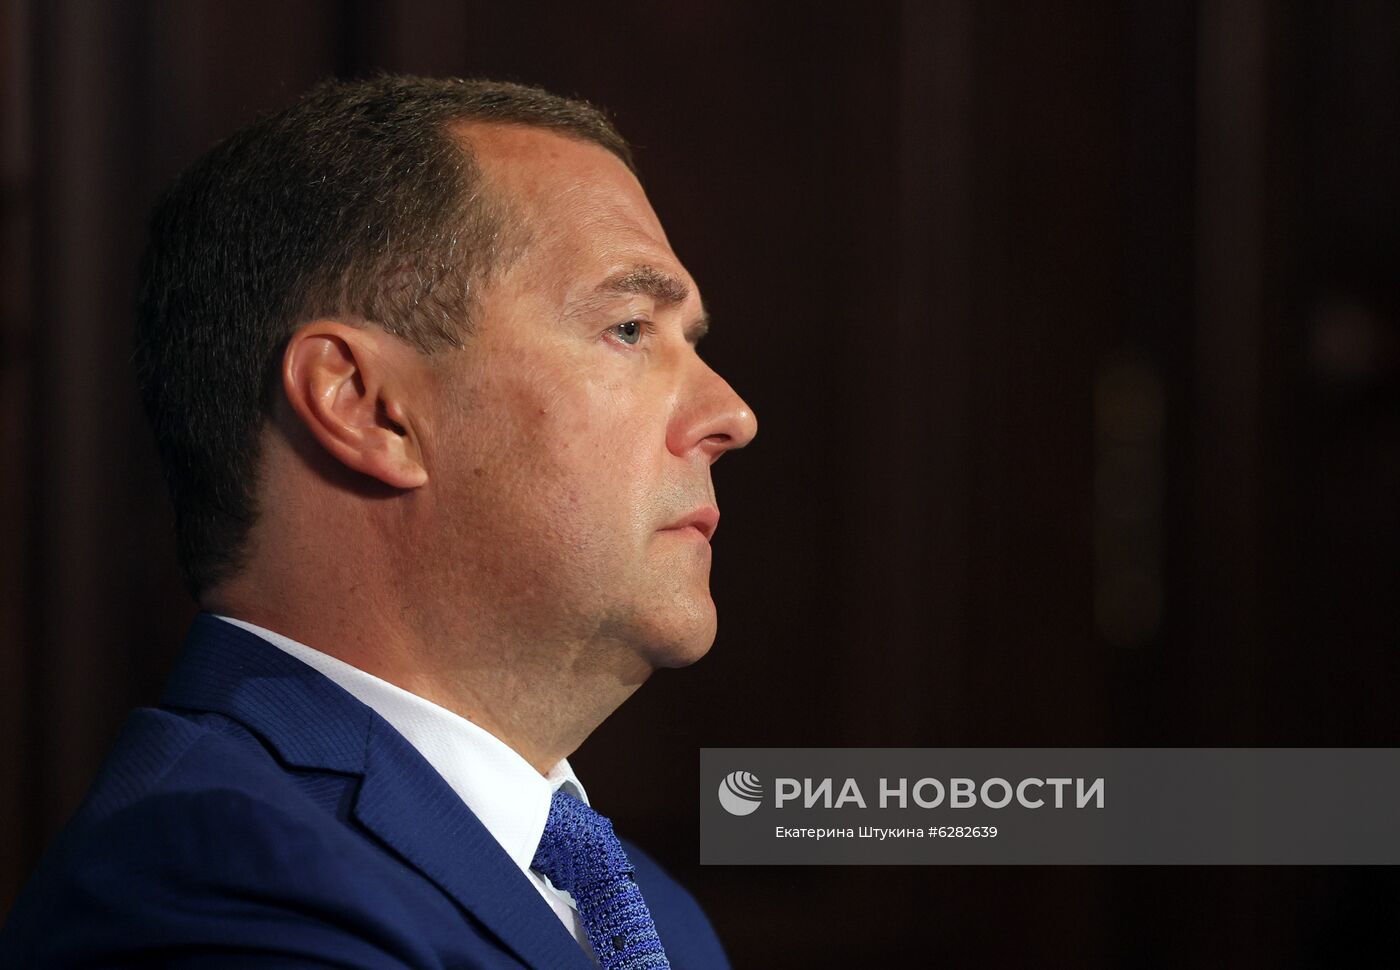 Заместитель председателя Совбеза РФ Д. Медведев дал интервью ИД "Комсомольская правда"